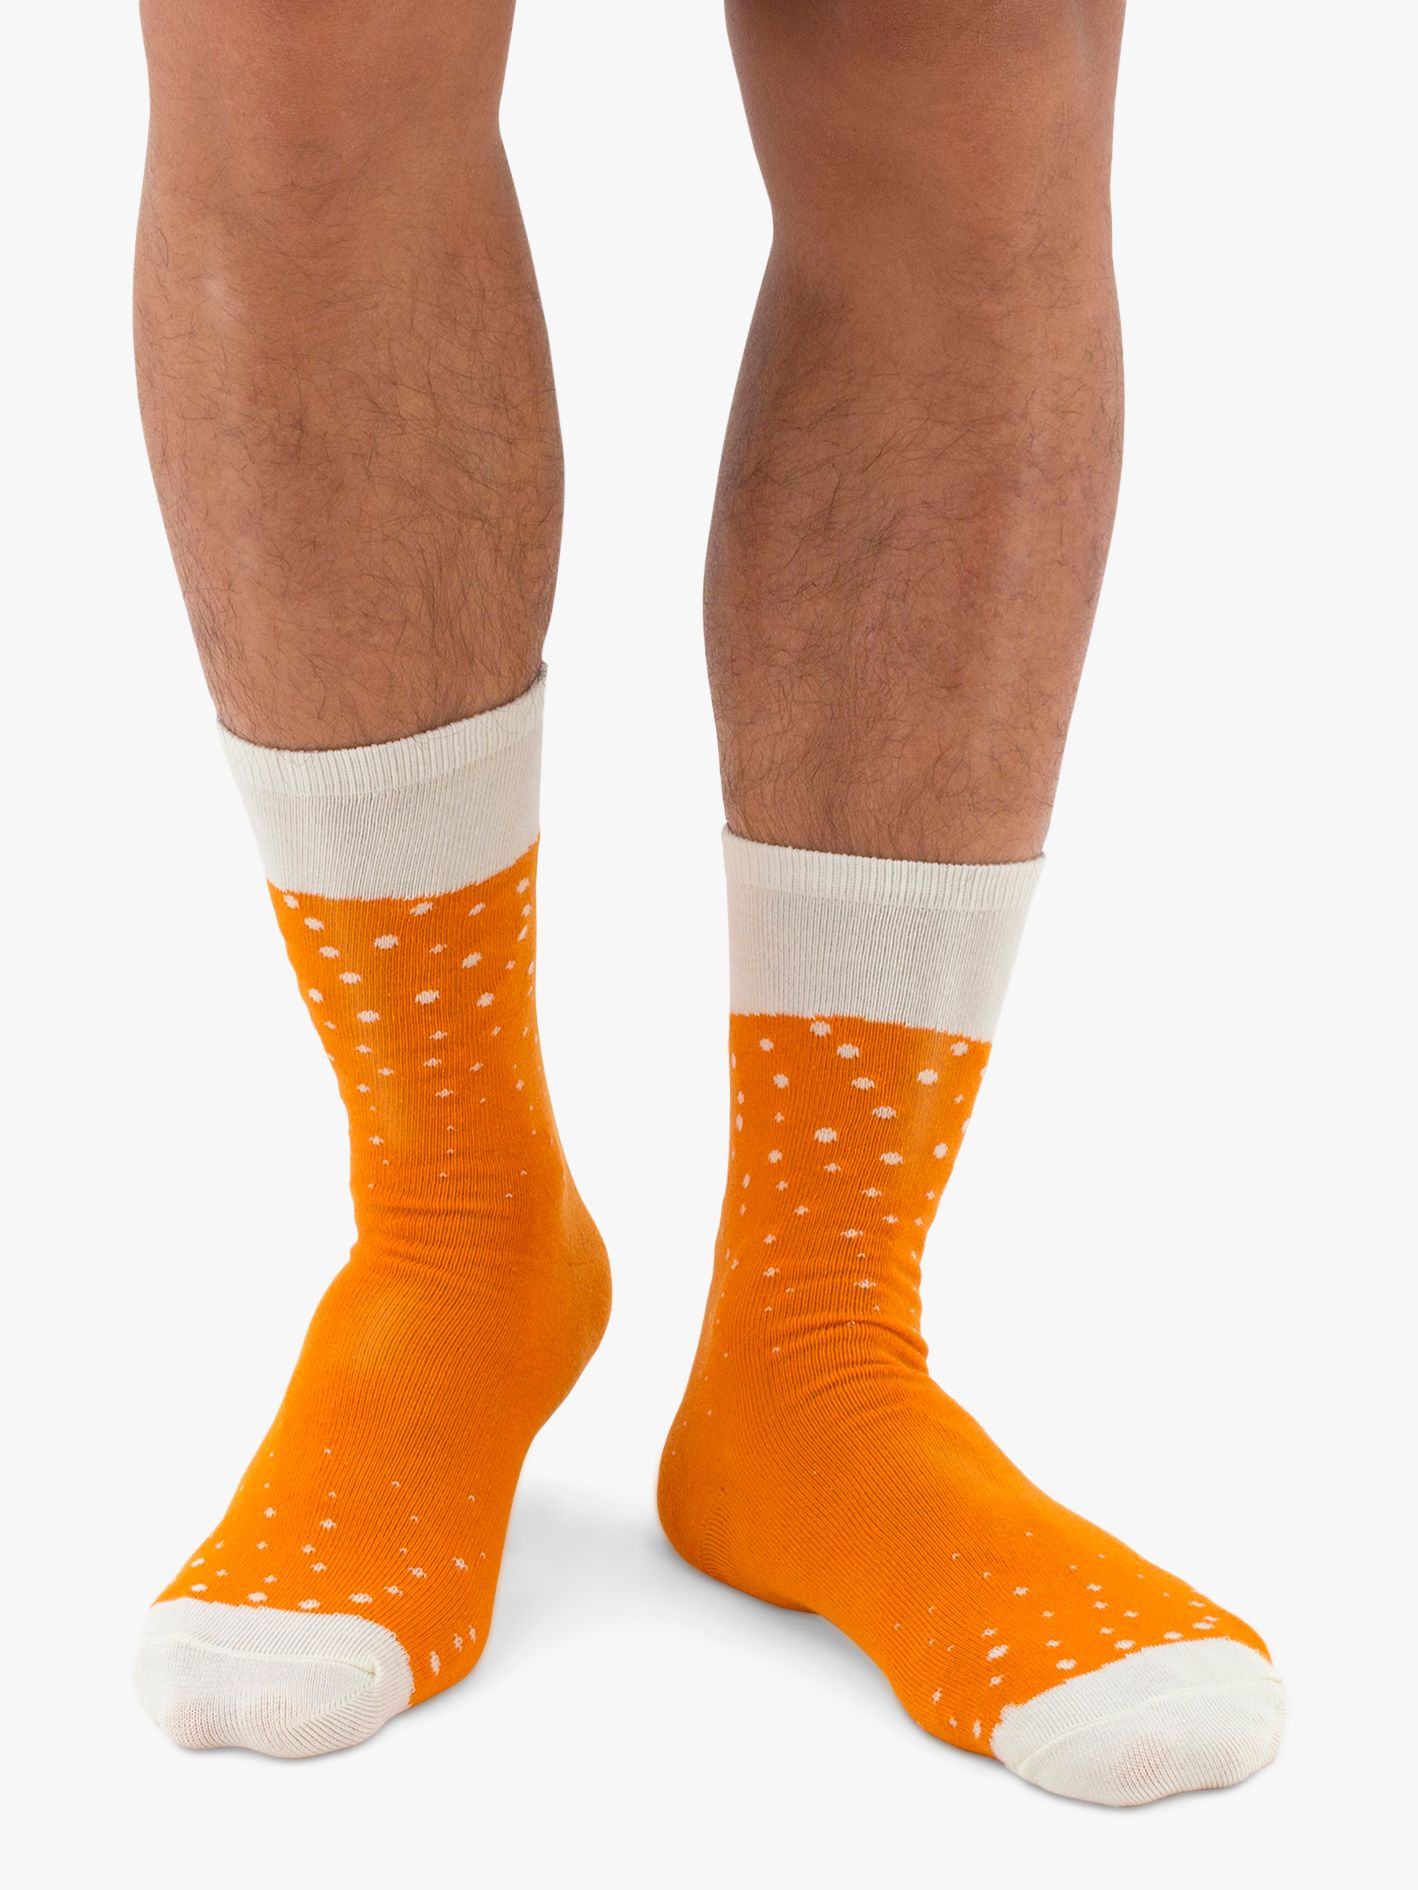 Luckies Men's Ale Beer Socks Gift Set, One Size, Orange/Multi